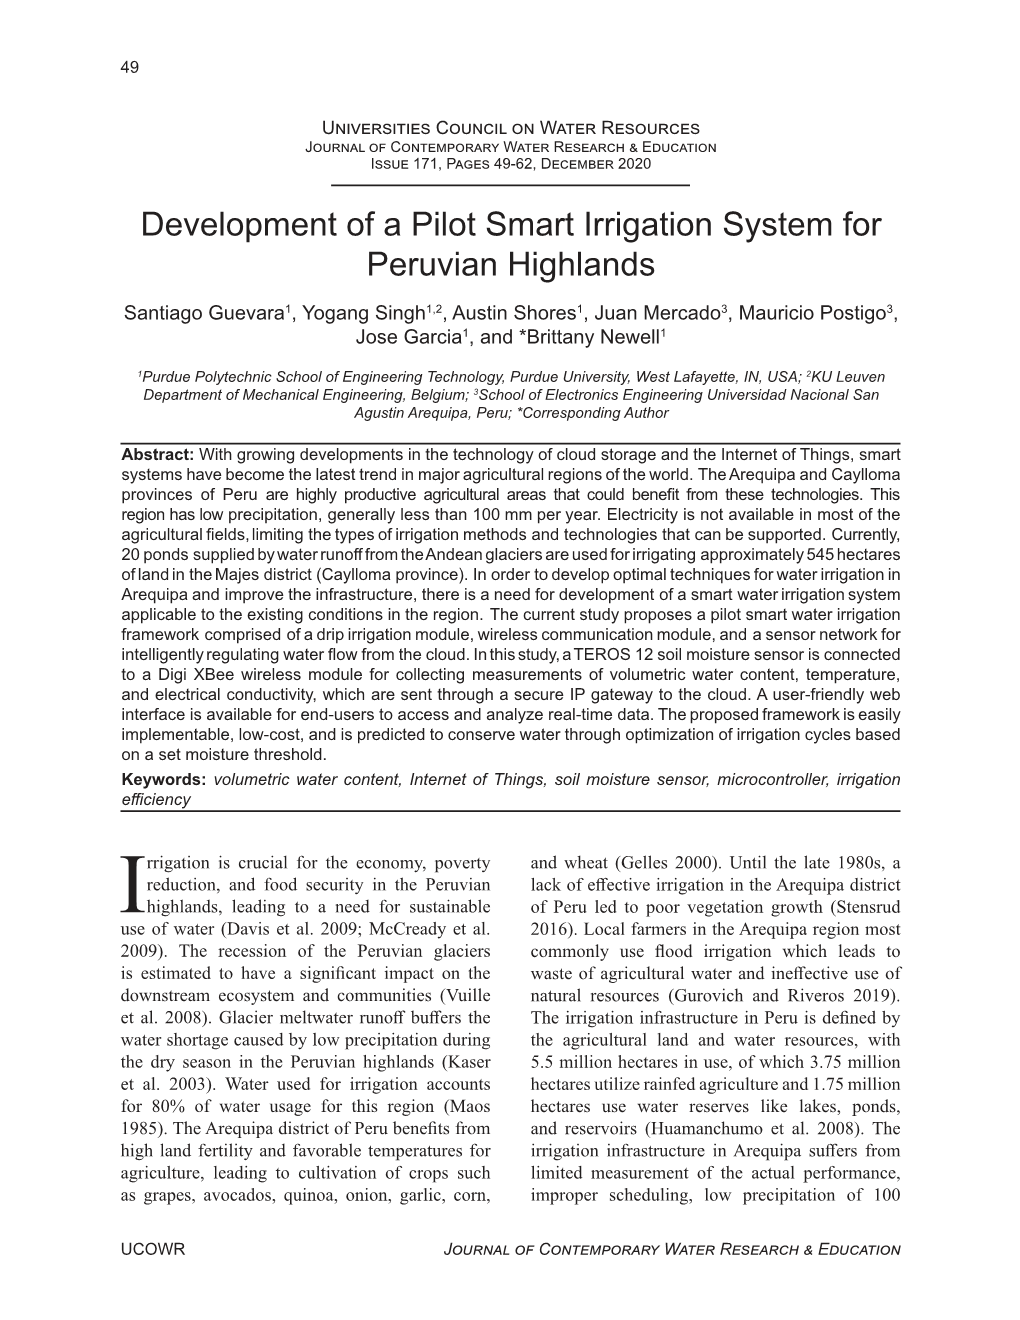 Development of a Pilot Smart Irrigation System for Peruvian Highlands